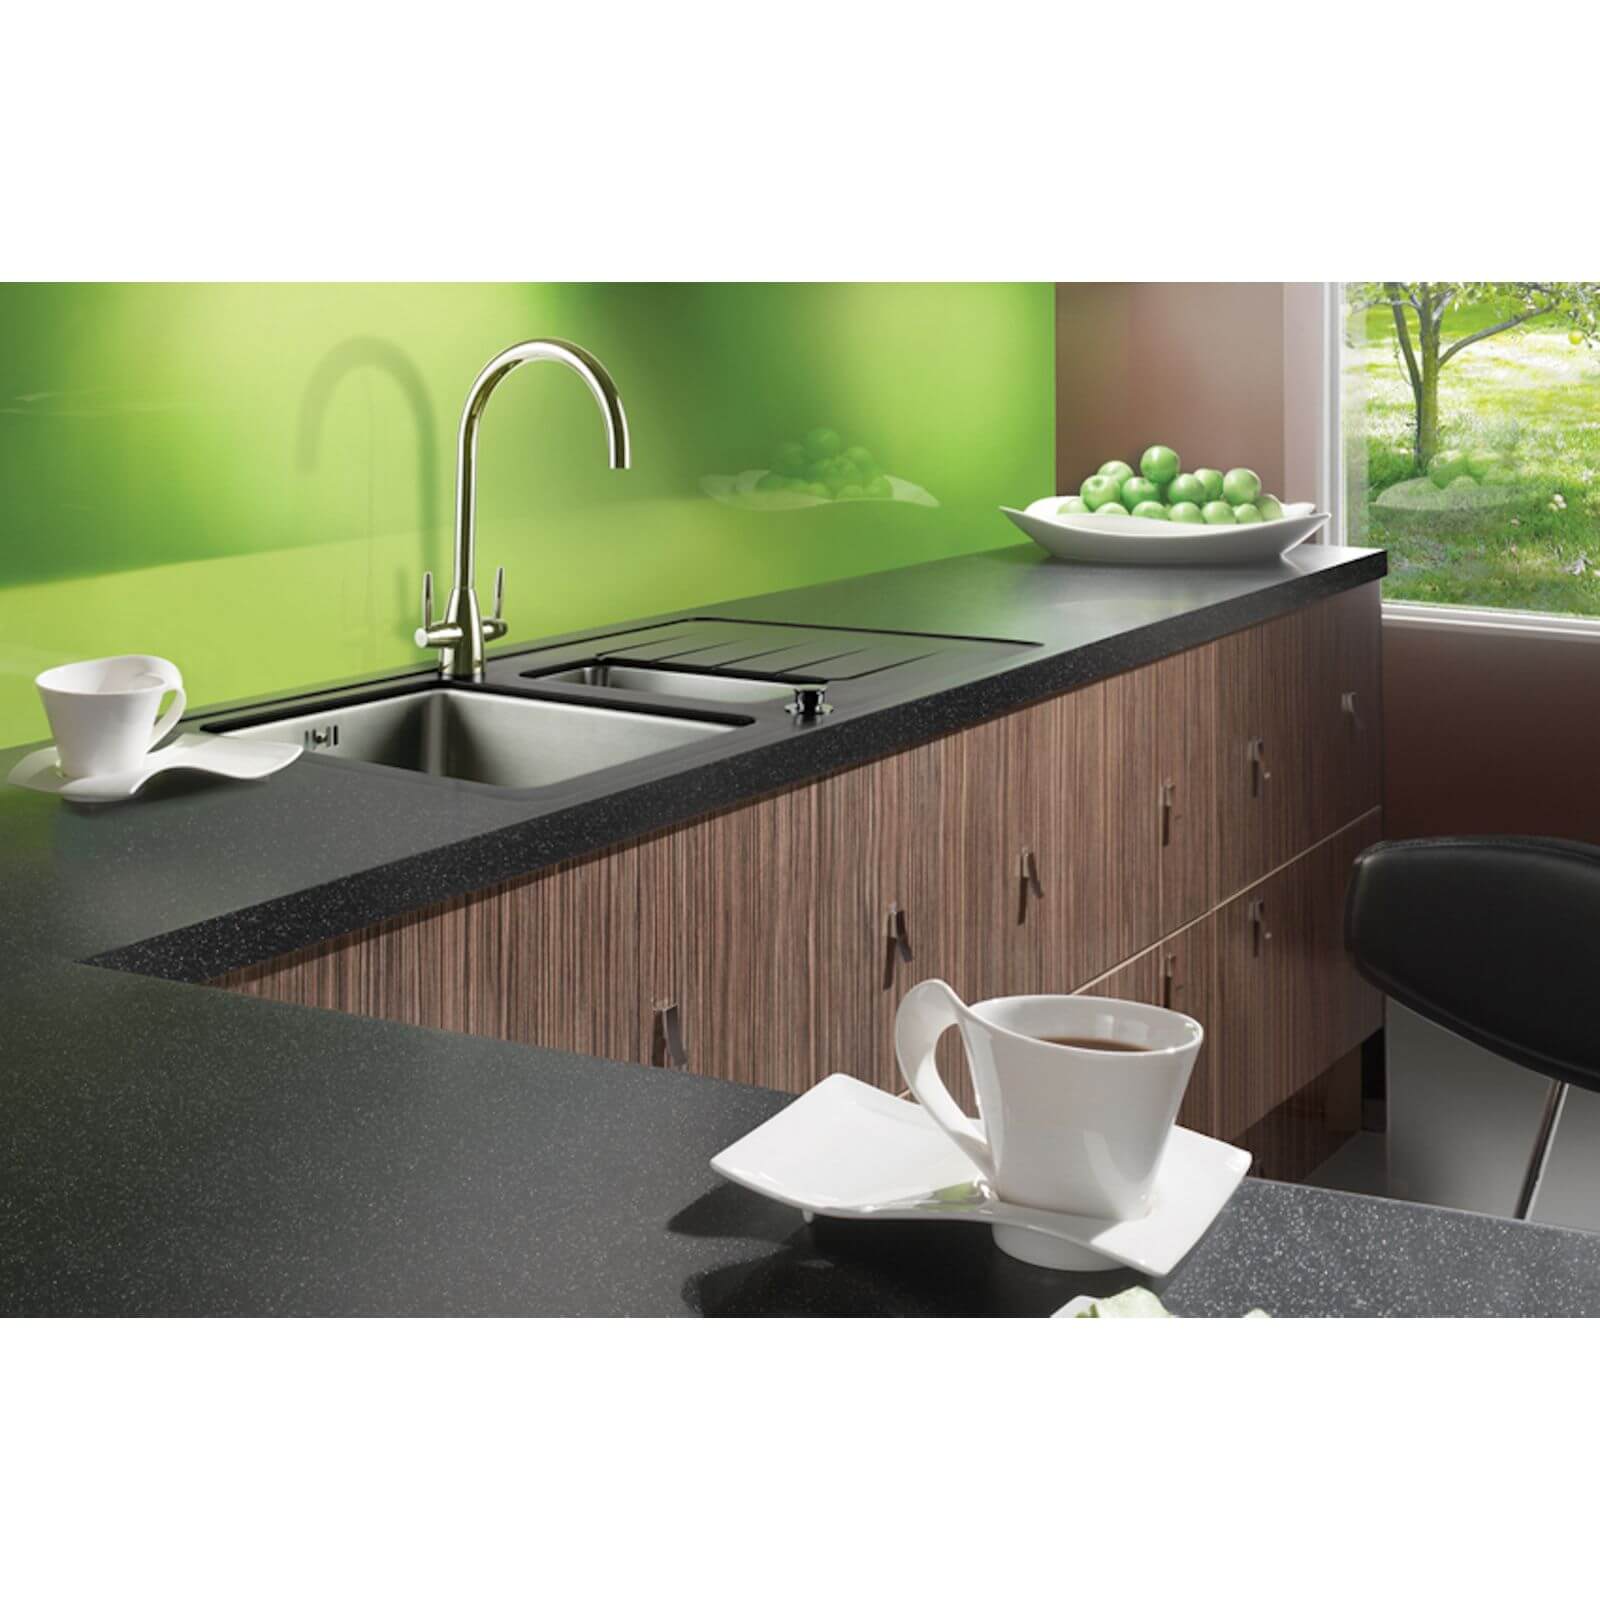 Maia Galaxy Kitchen Worktop - 360 x 65 x 4.2cm